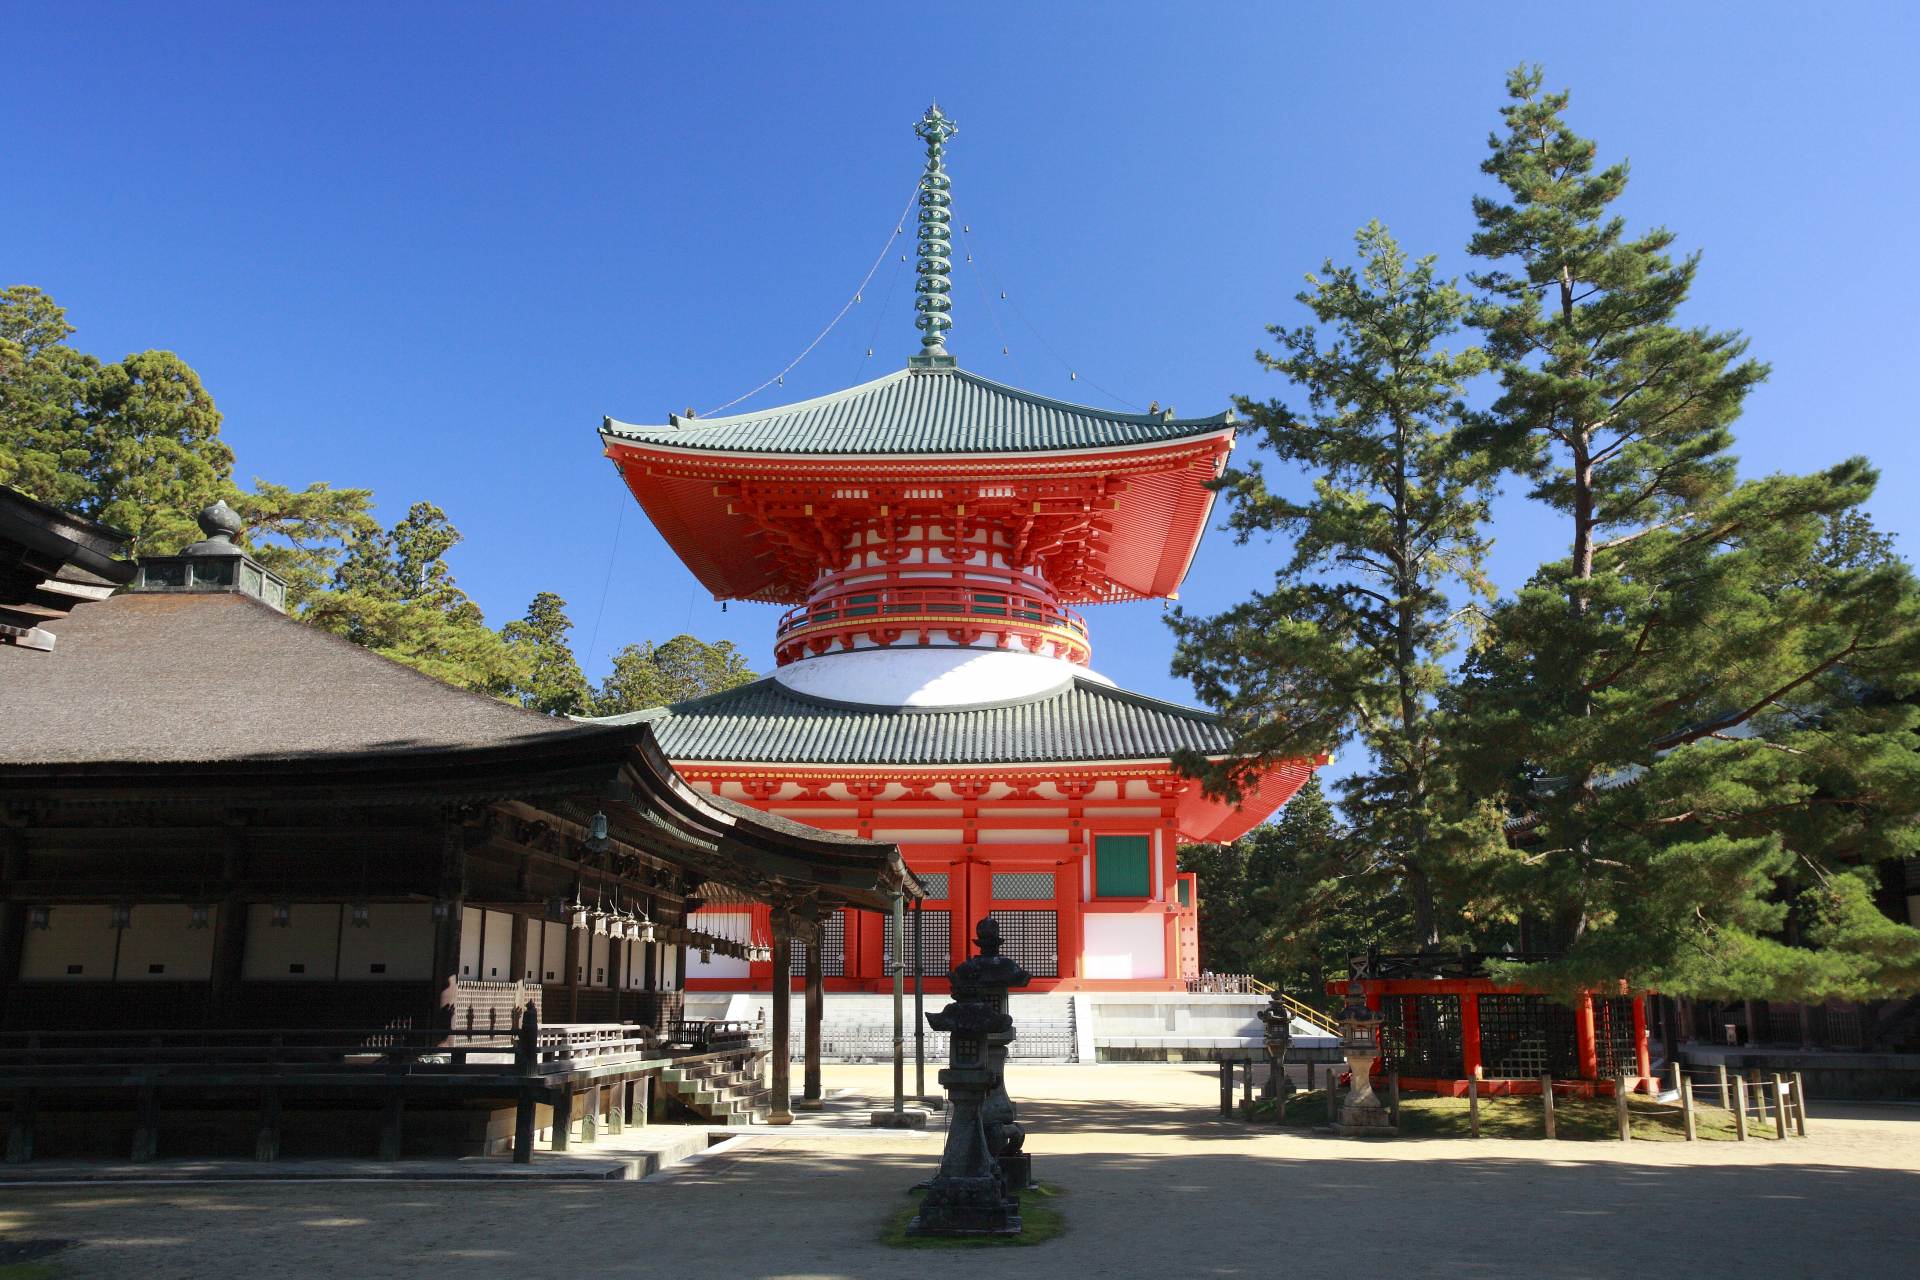 「壇上伽藍」にそびえる「根本大塔」は、弘法大師が修禅の基盤として建立した日本初の多宝塔。堂内には立体曼荼羅が表現されている